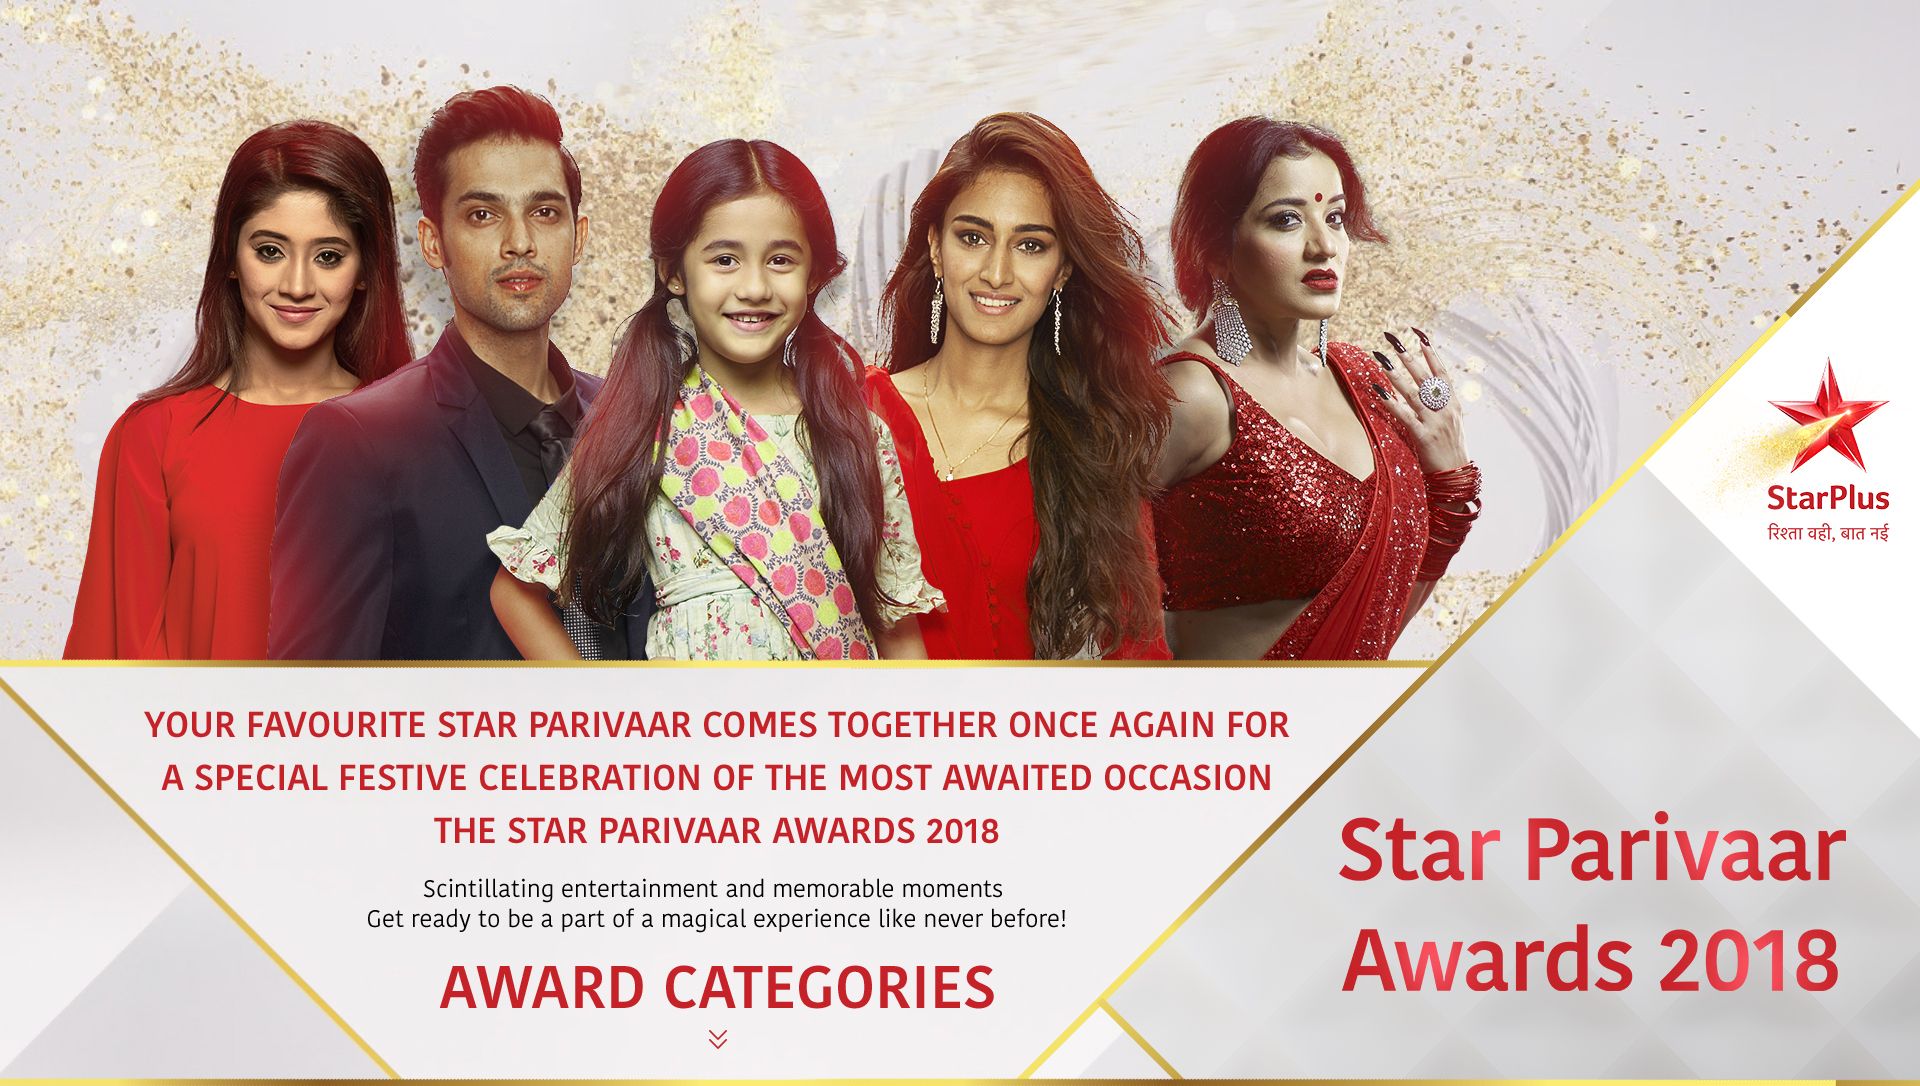 Star Plus Star Parivaar Awards 2018 / Choreographer dharmesh and punit